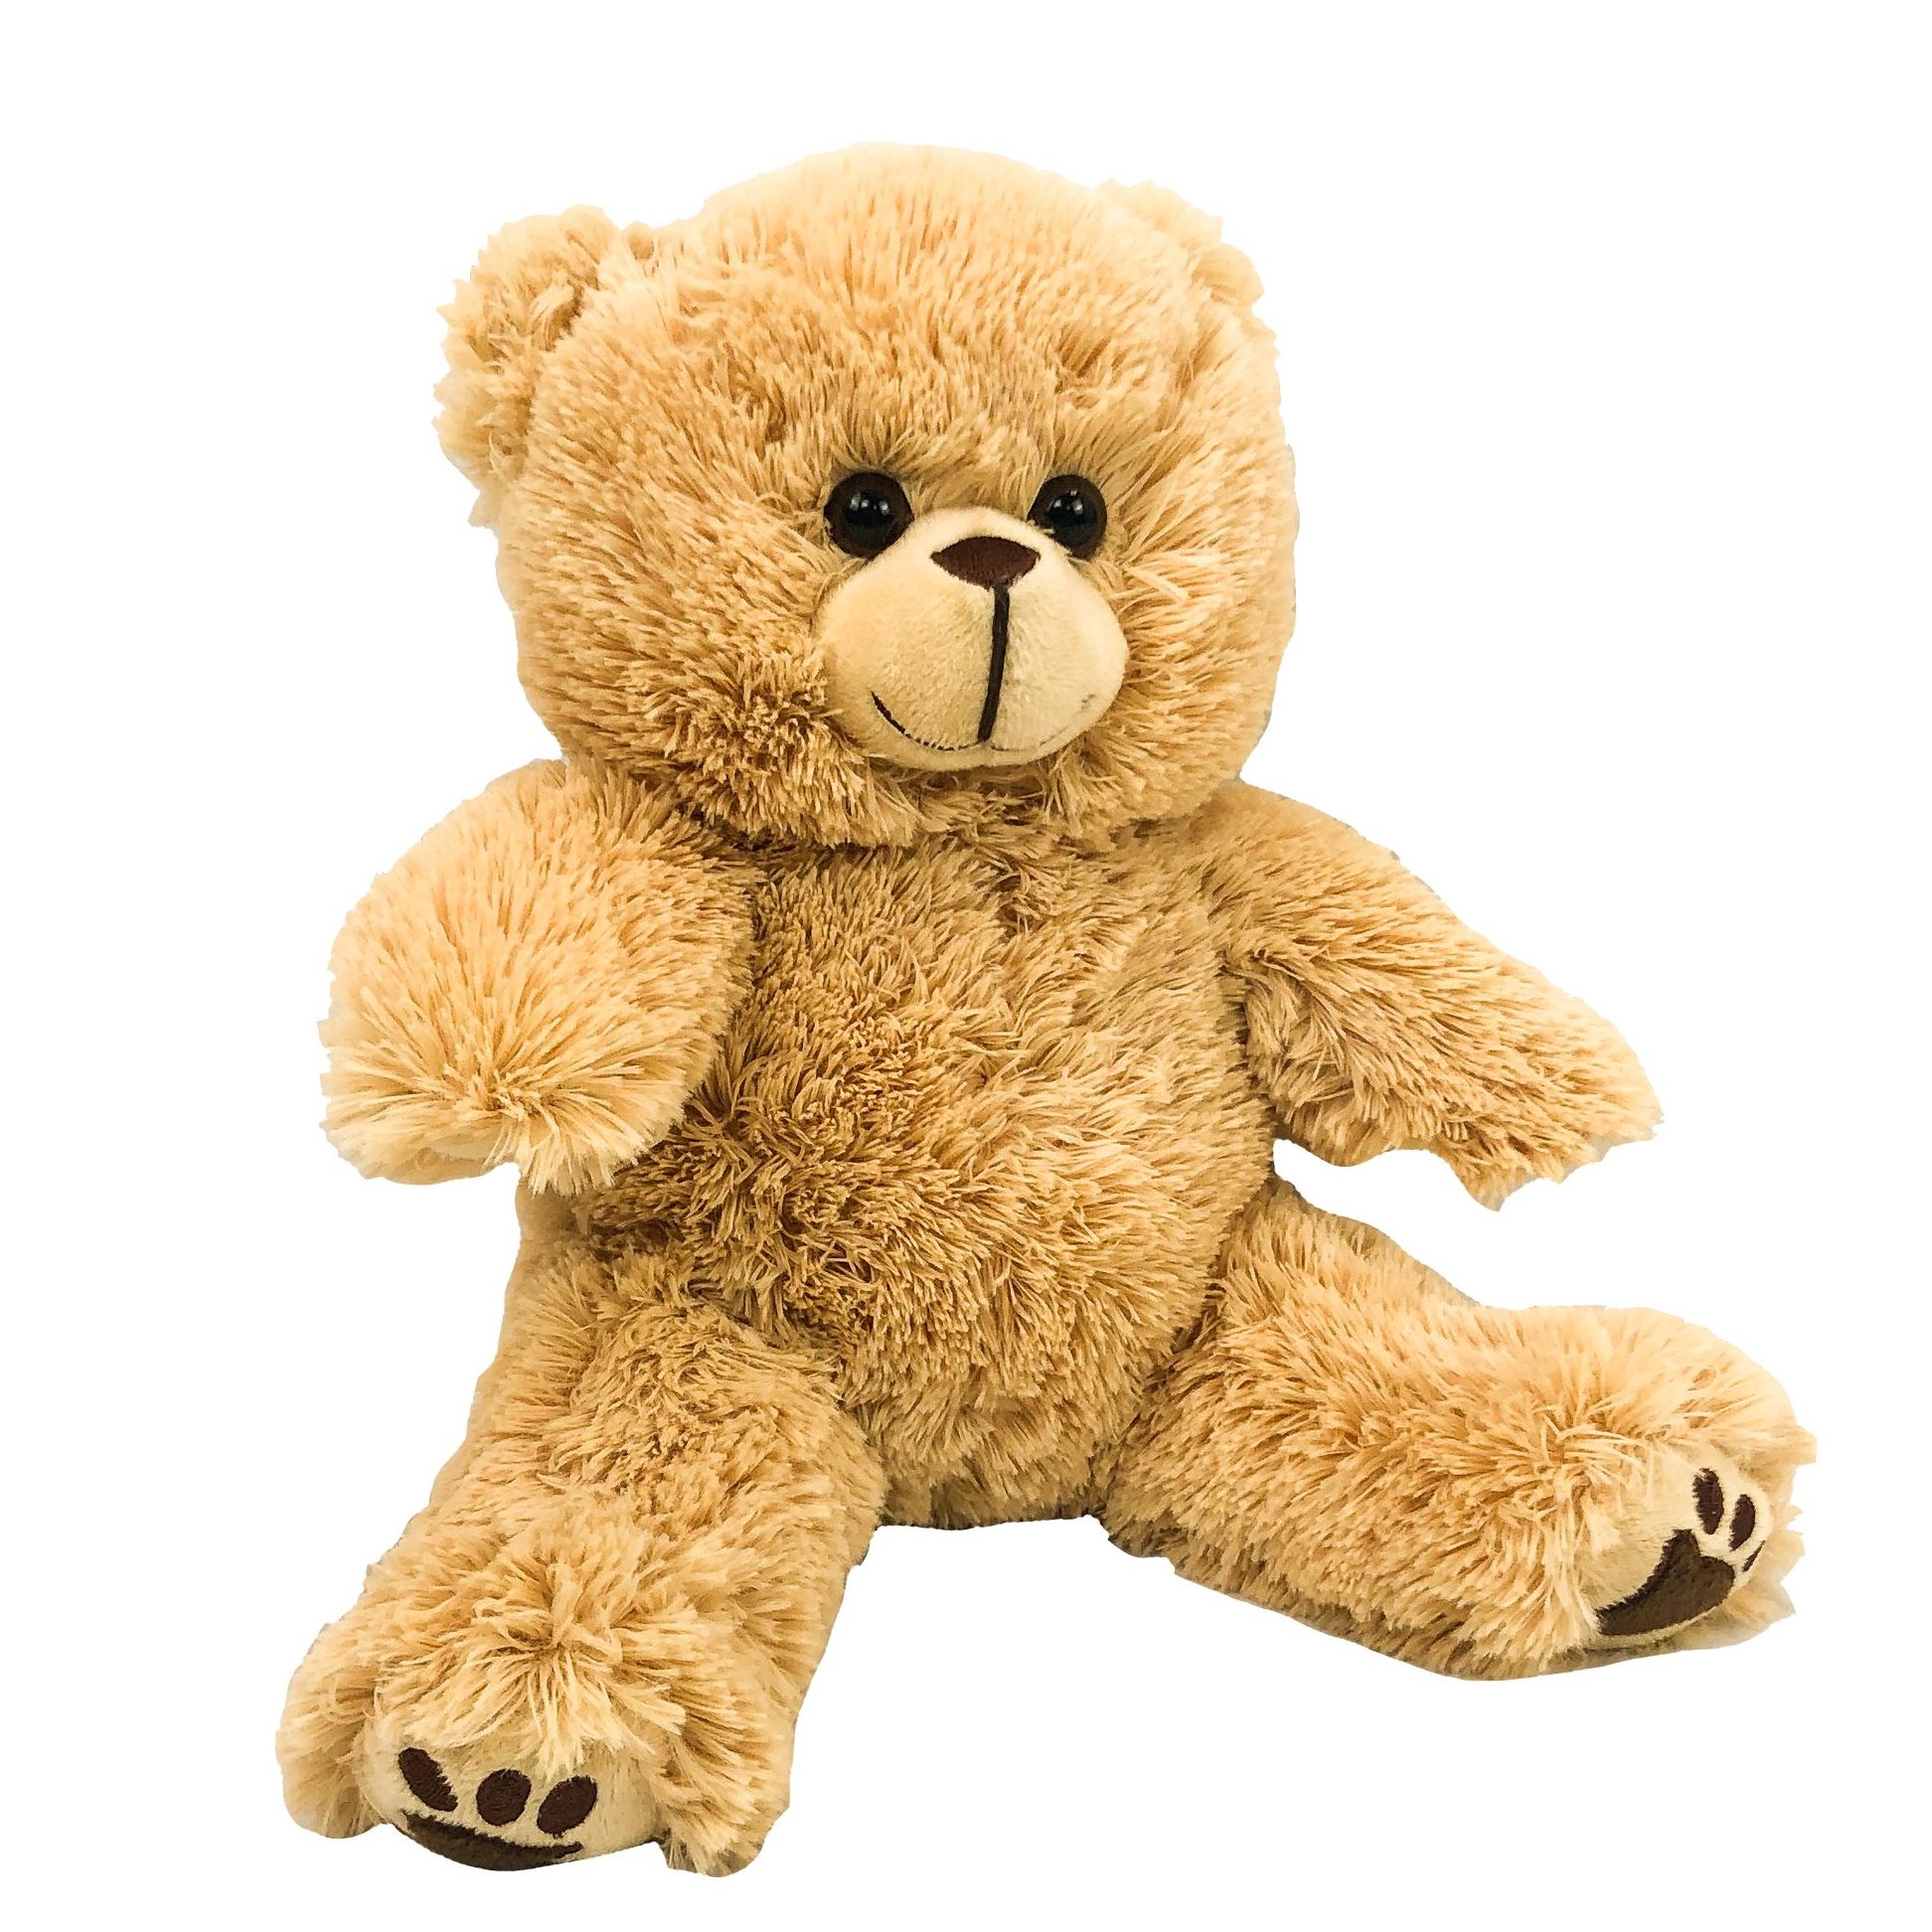 8 inch teddy bear